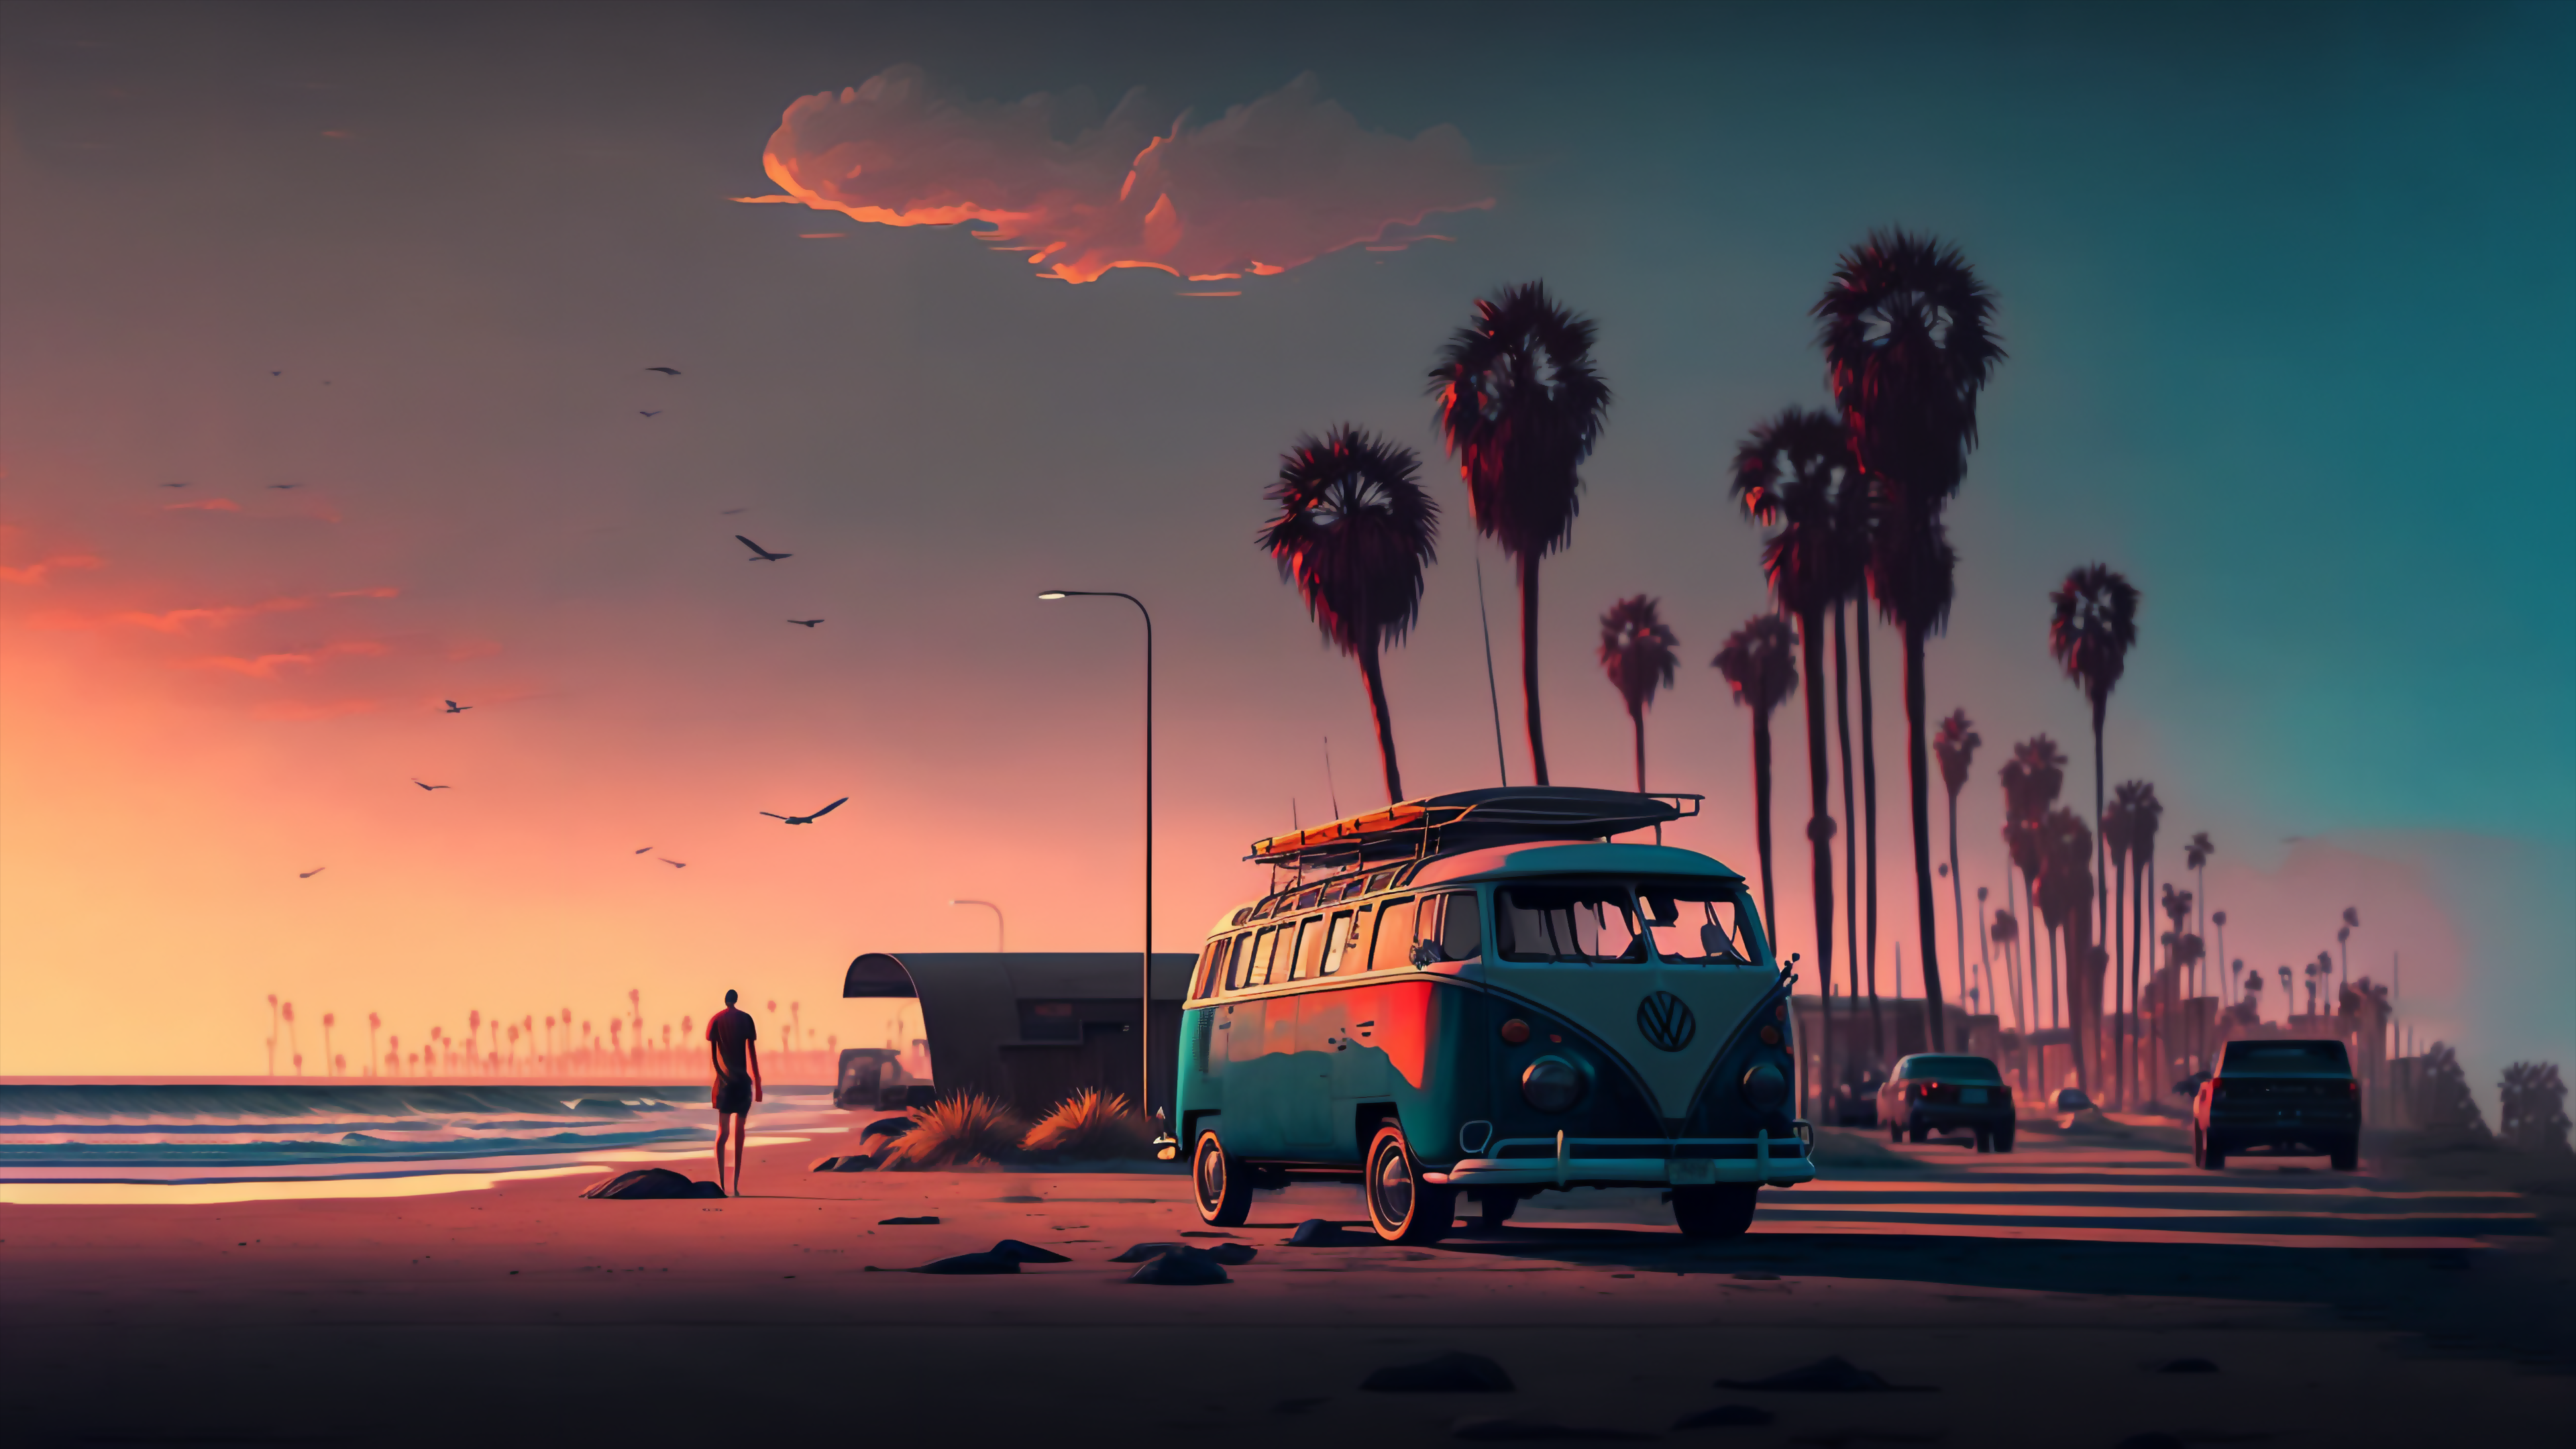 4k Desktop Wallpaper Stunning Beach Sunset Scene